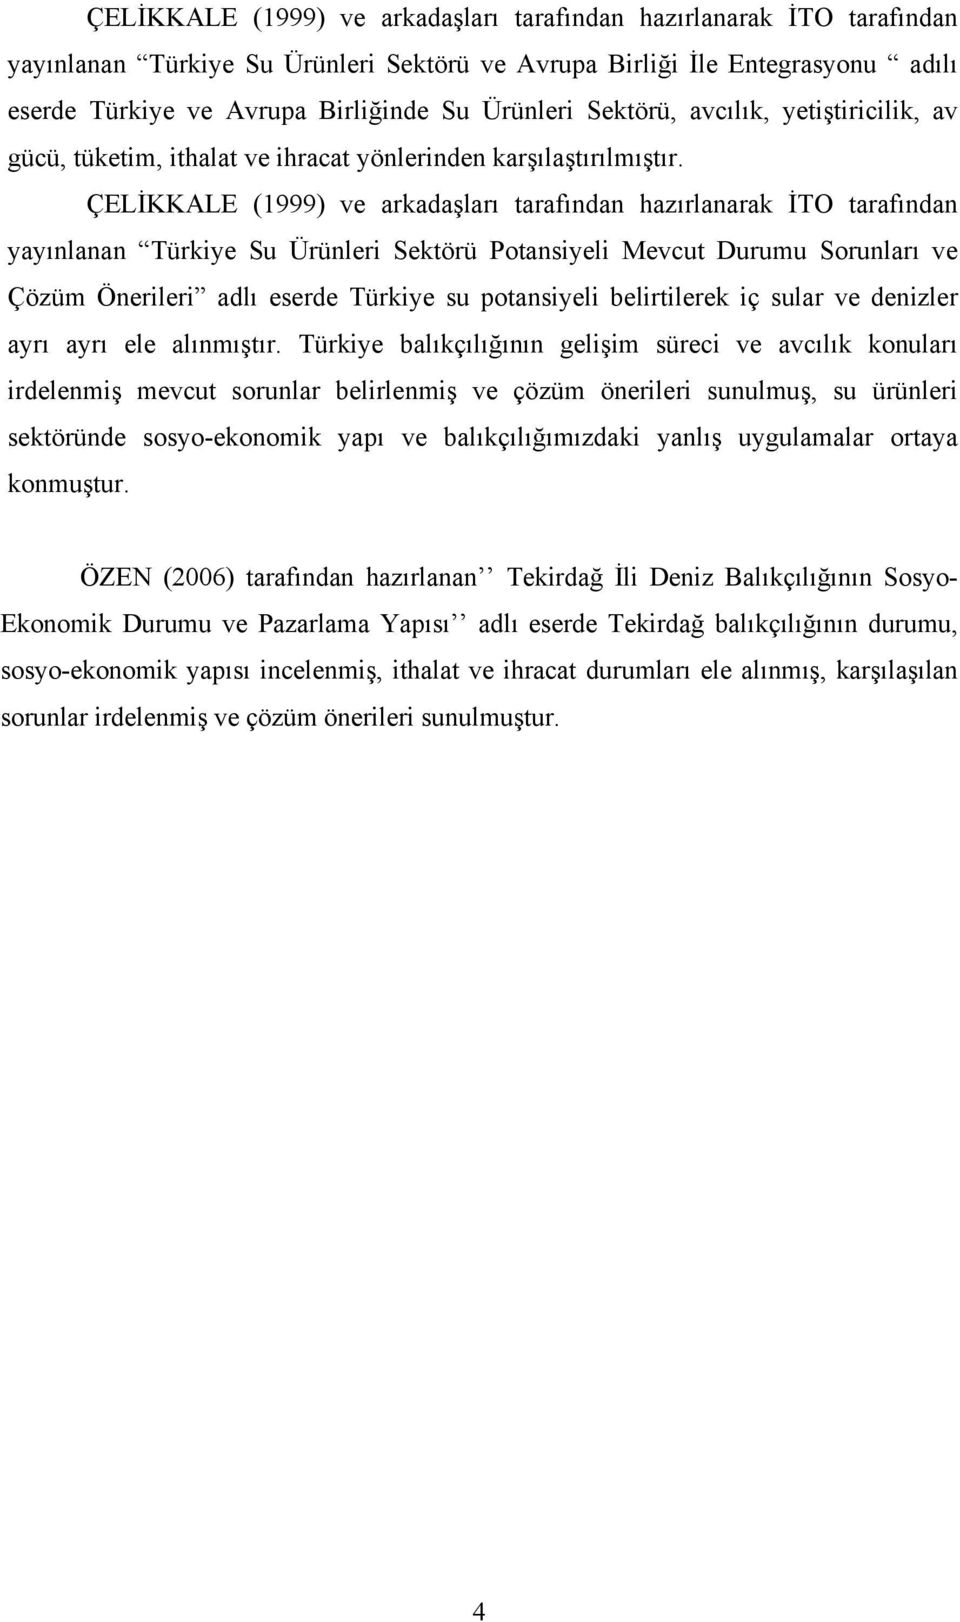 ÇELİKKALE (1999) ve arkadaşları tarafından hazırlanarak İTO tarafından yayınlanan Türkiye Su Ürünleri Sektörü Potansiyeli Mevcut Durumu Sorunları ve Çözüm Önerileri adlı eserde Türkiye su potansiyeli